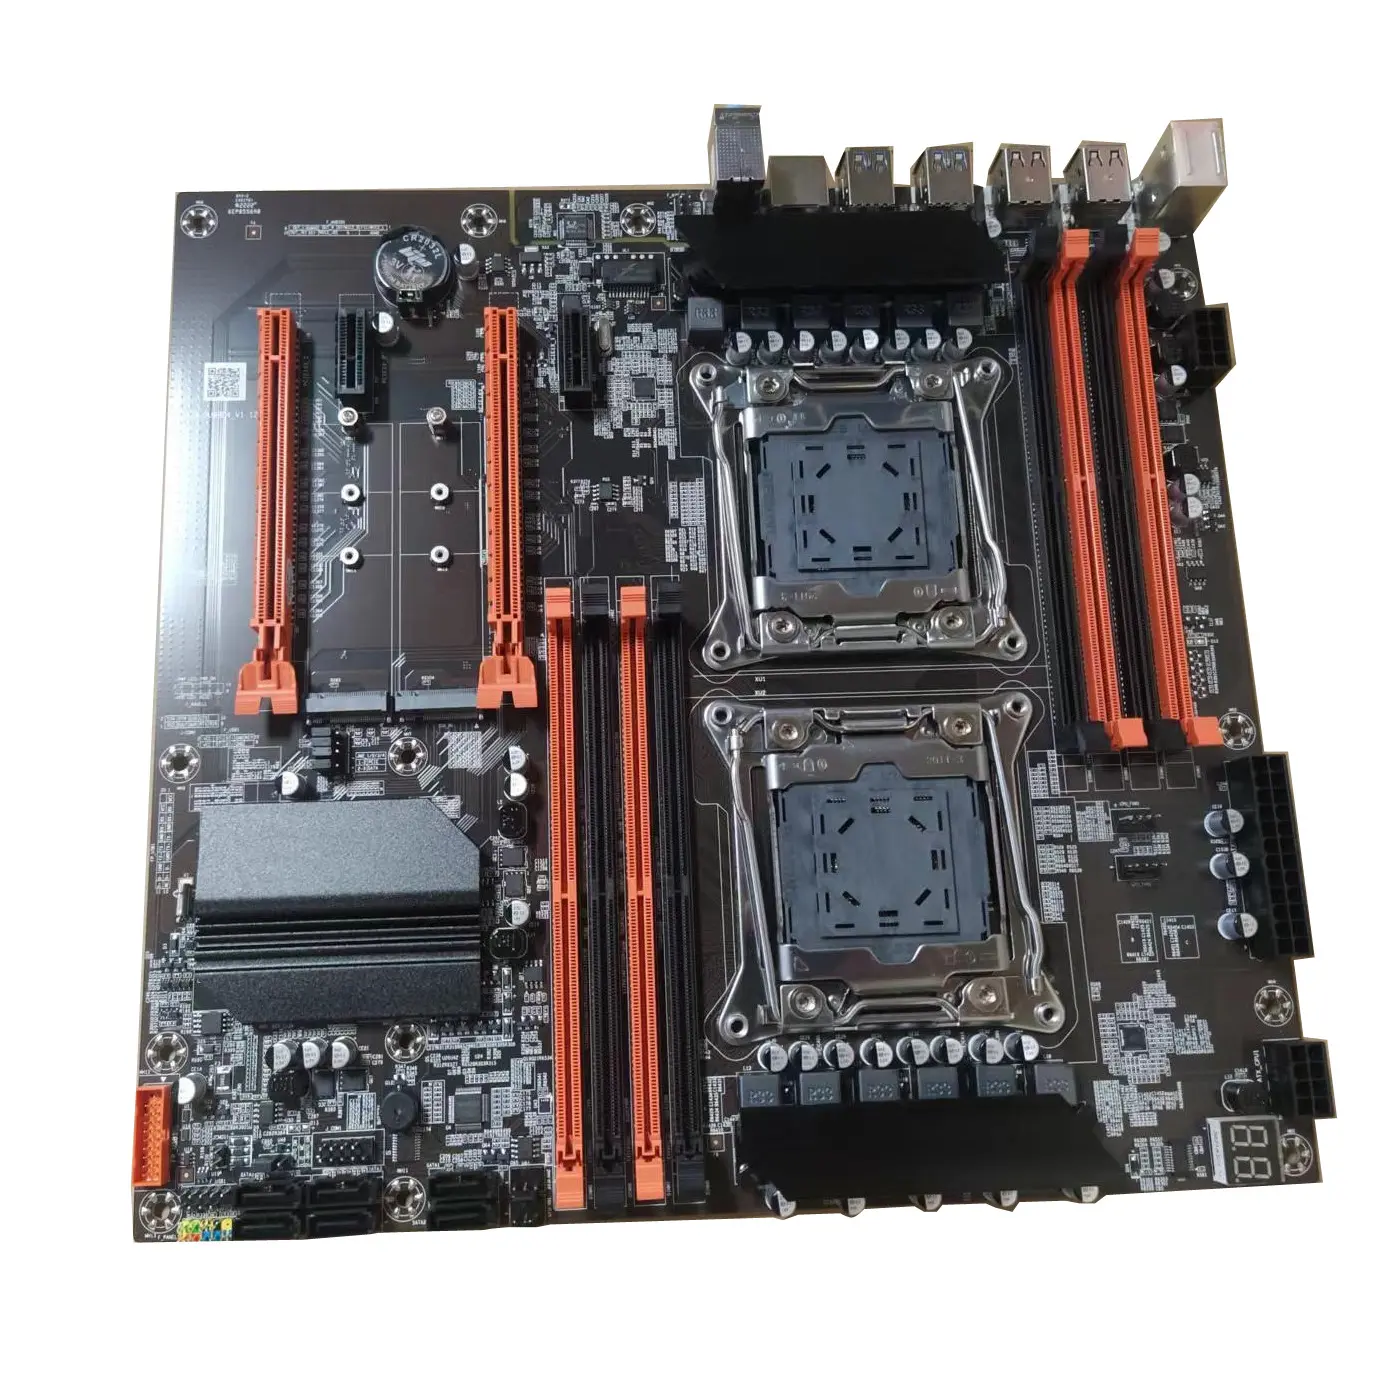 सर्वर डेस्कटॉप मदरबोर्ड के लिए डुअल Xeon E5 Lga2011 गेमिंग मदर बोर्ड डुअल चैनल DDR4 के साथ X99 डुअल सीपीयू मदरबोर्ड कॉम्बो